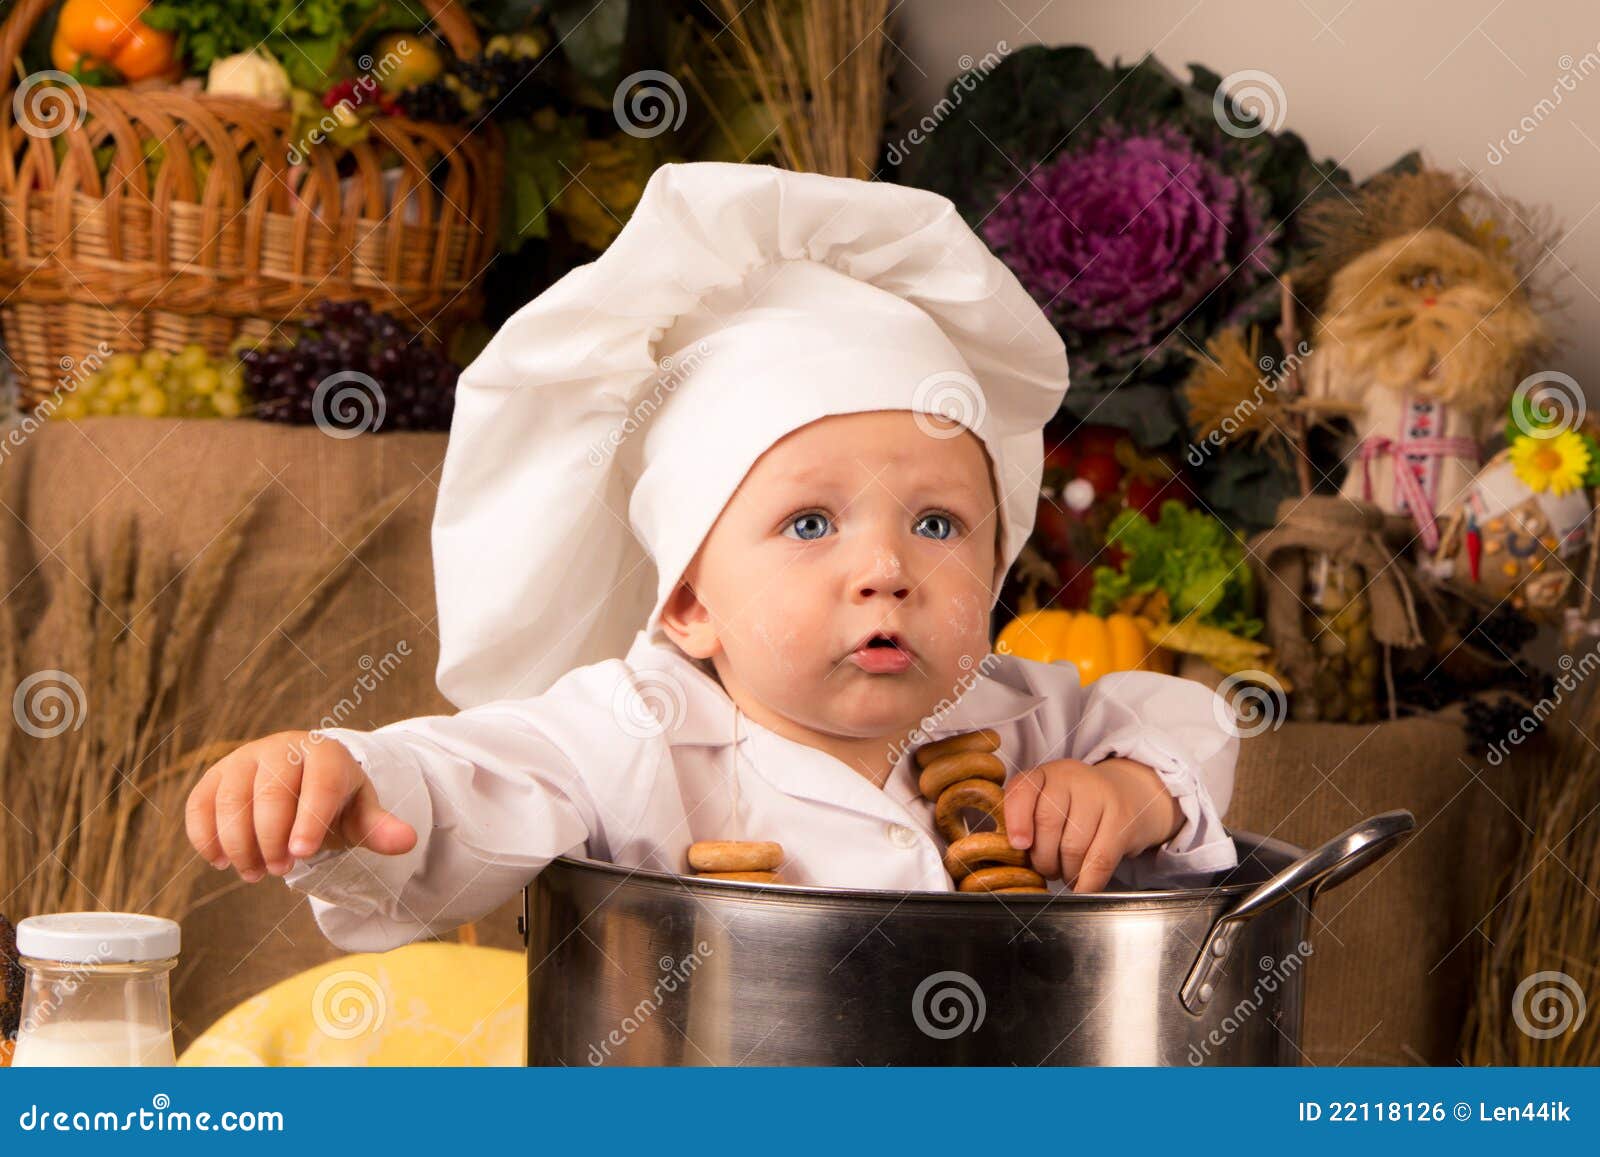 1,063 Cocinero Del Bebé En El Pote Fotos de stock - Fotos libres de  regalías de Dreamstime